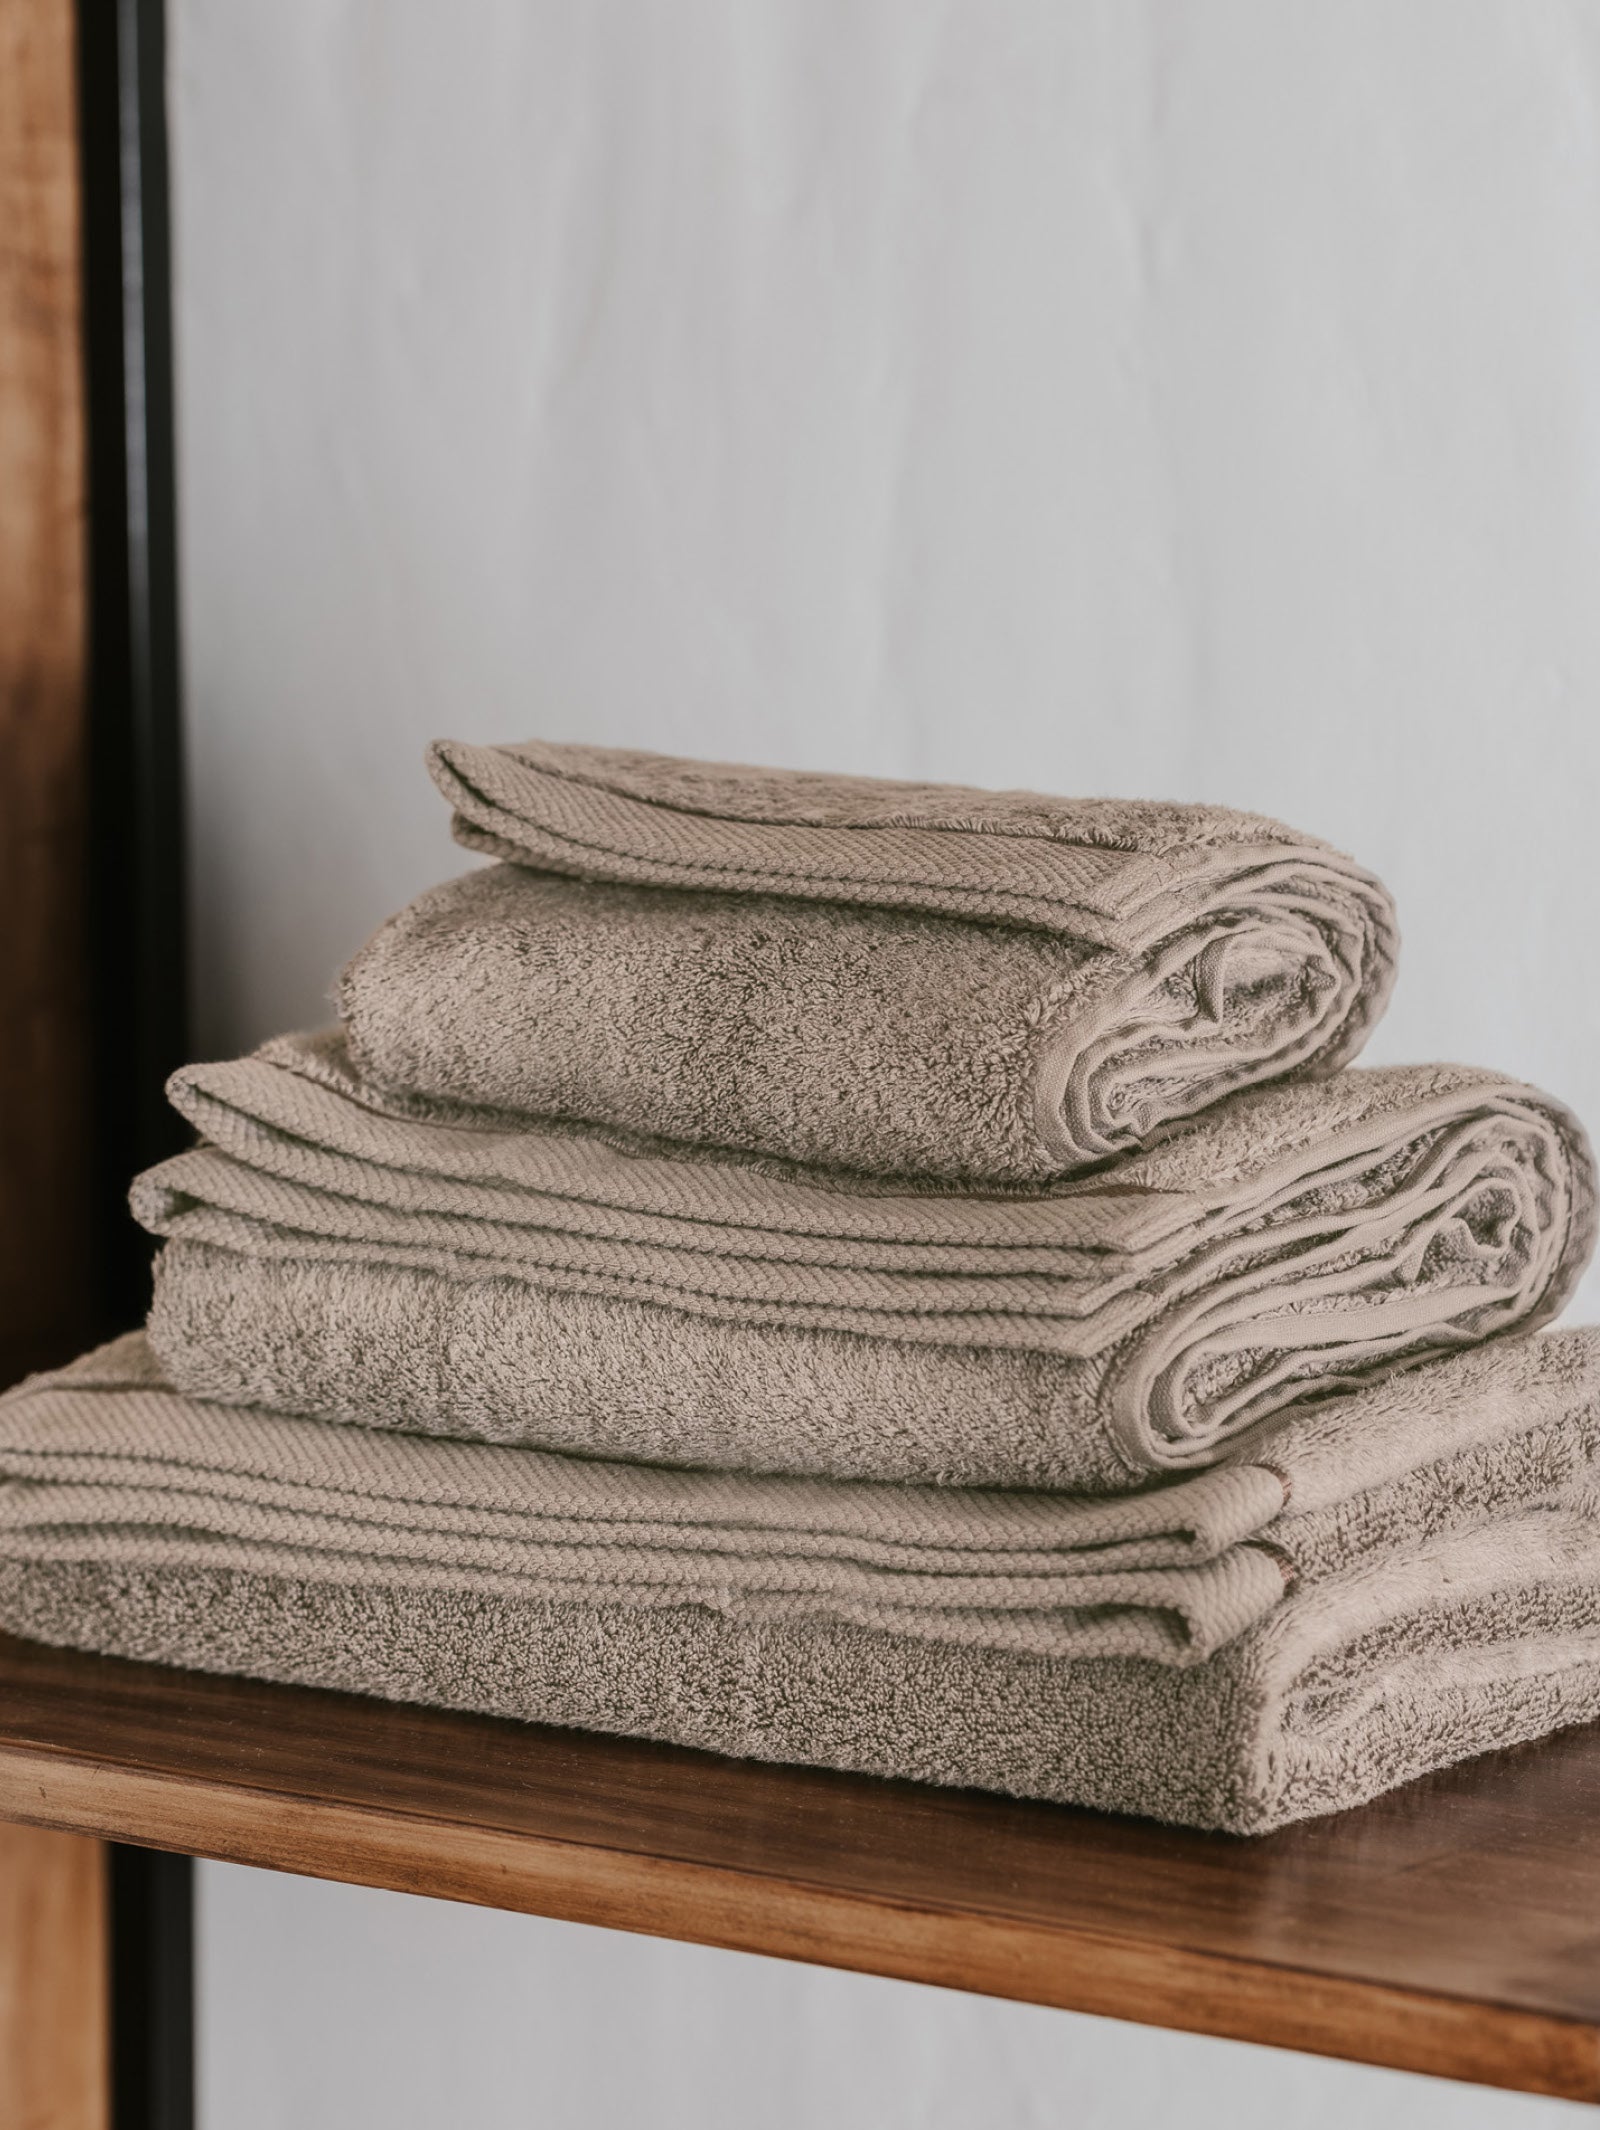 Martex T4100-Ecru Bath Towel,Ecru,24x50,PK12, Ecru